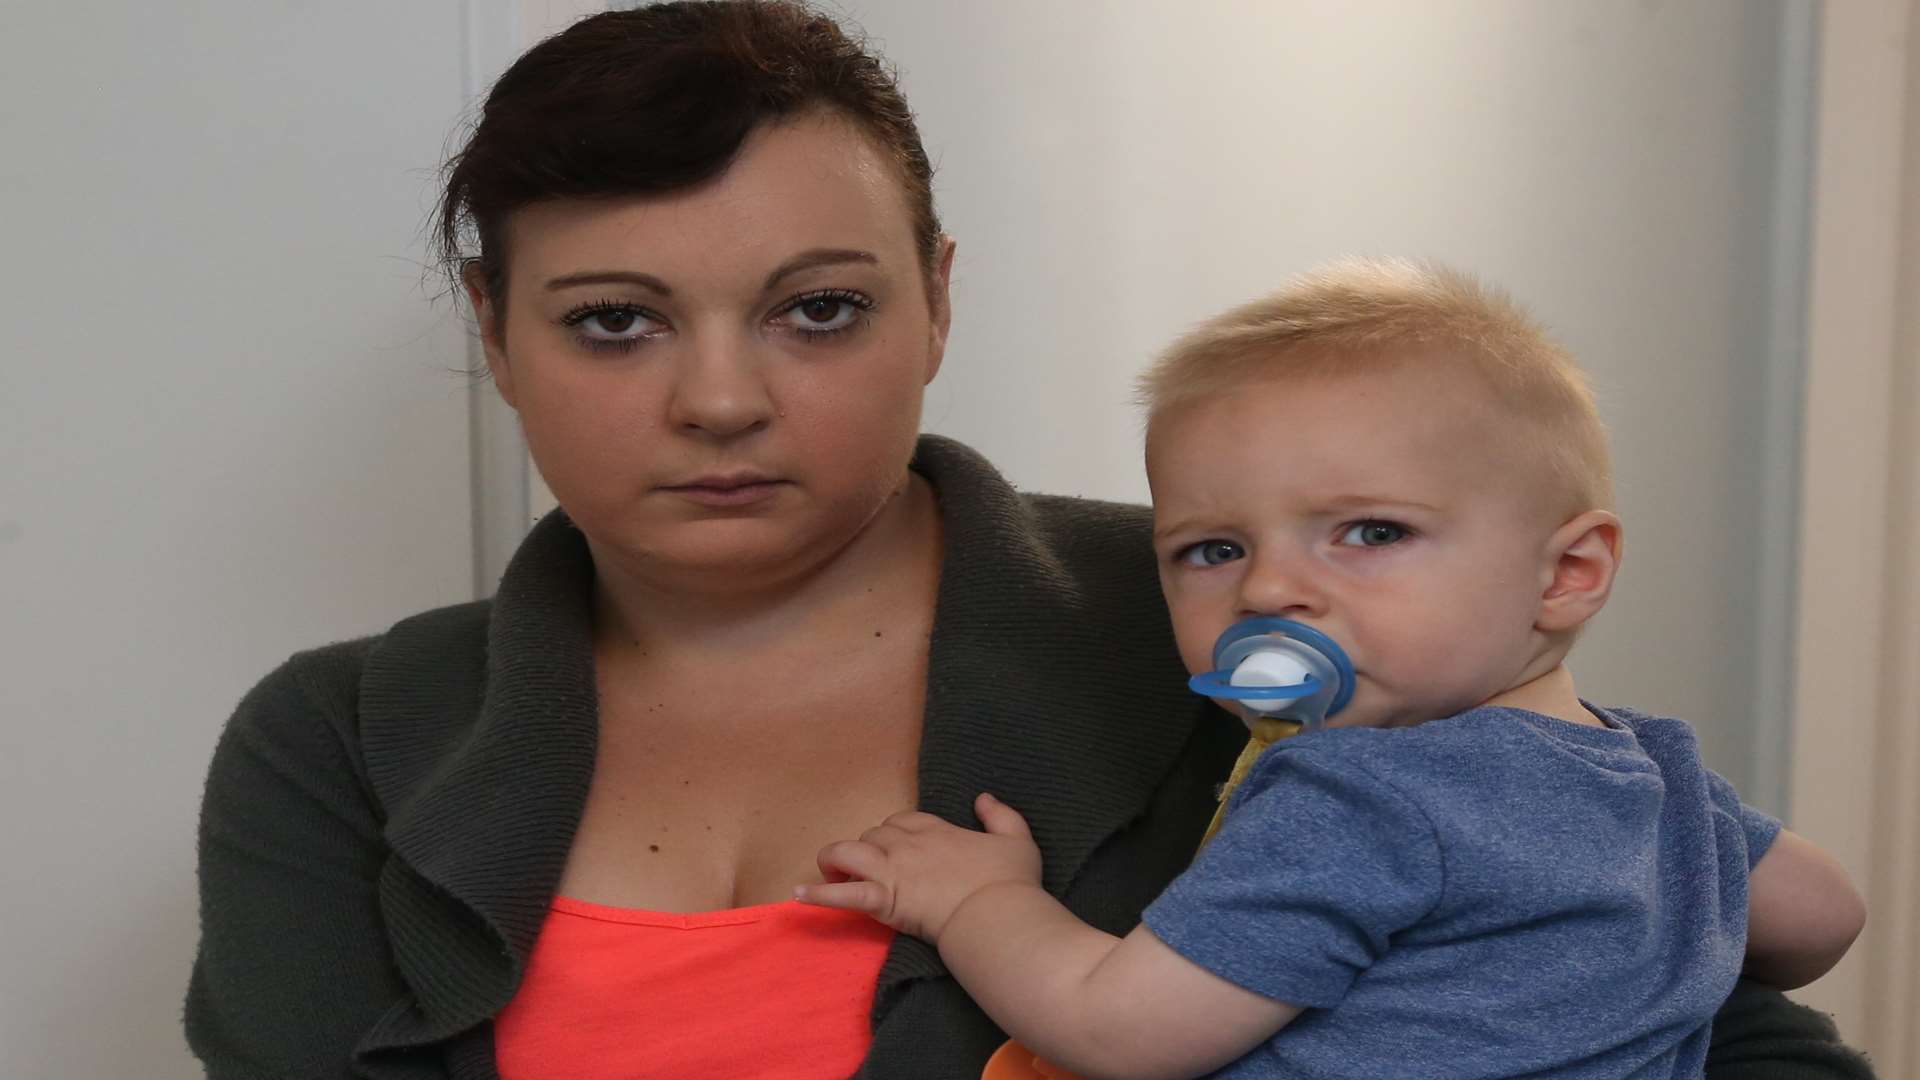 Lauren Willcox was left stranded with her baby Michael